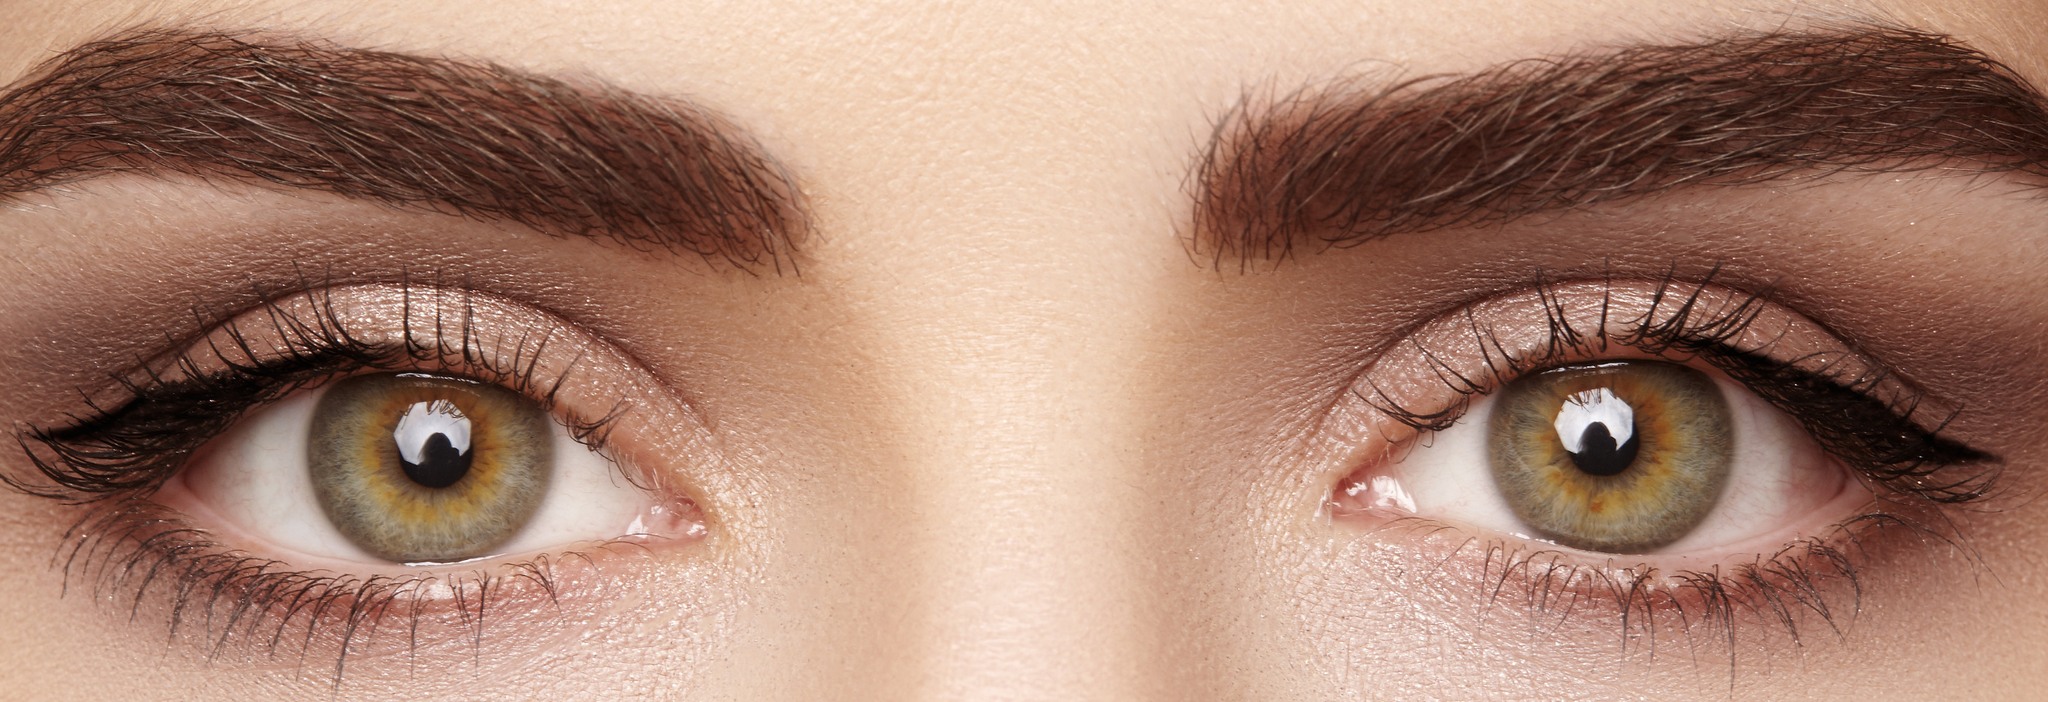 Augenbrauentransplantation Ablauf Und Kosten Jeuxlore Cosmetics